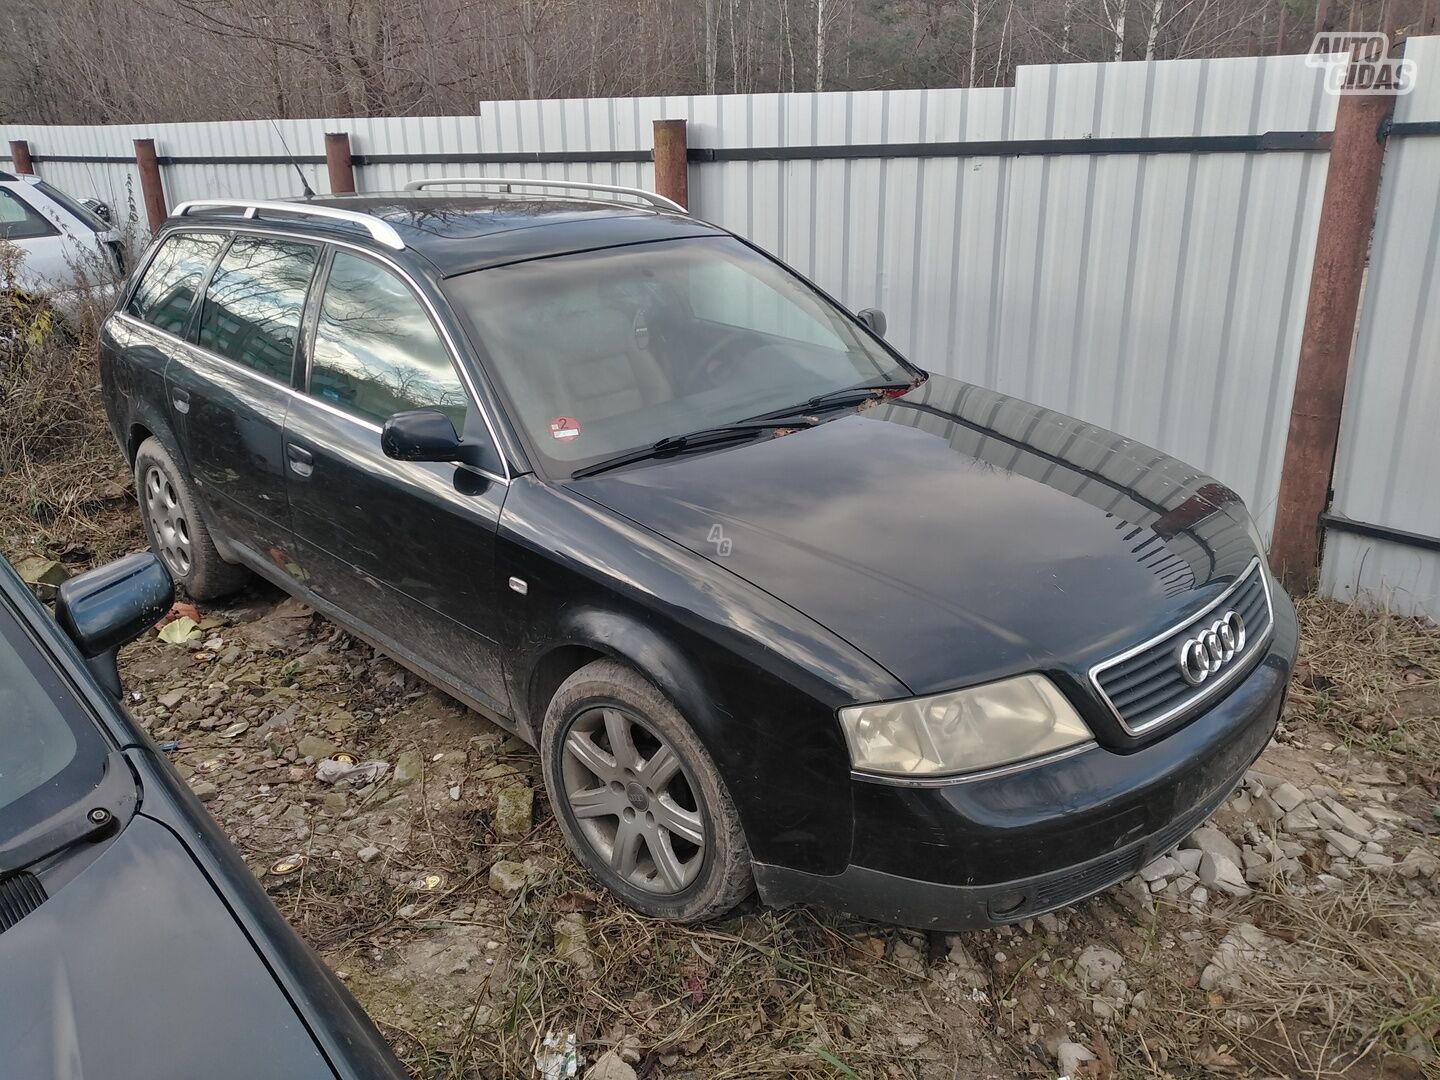 Audi A6 Quatro 2002 m dalys